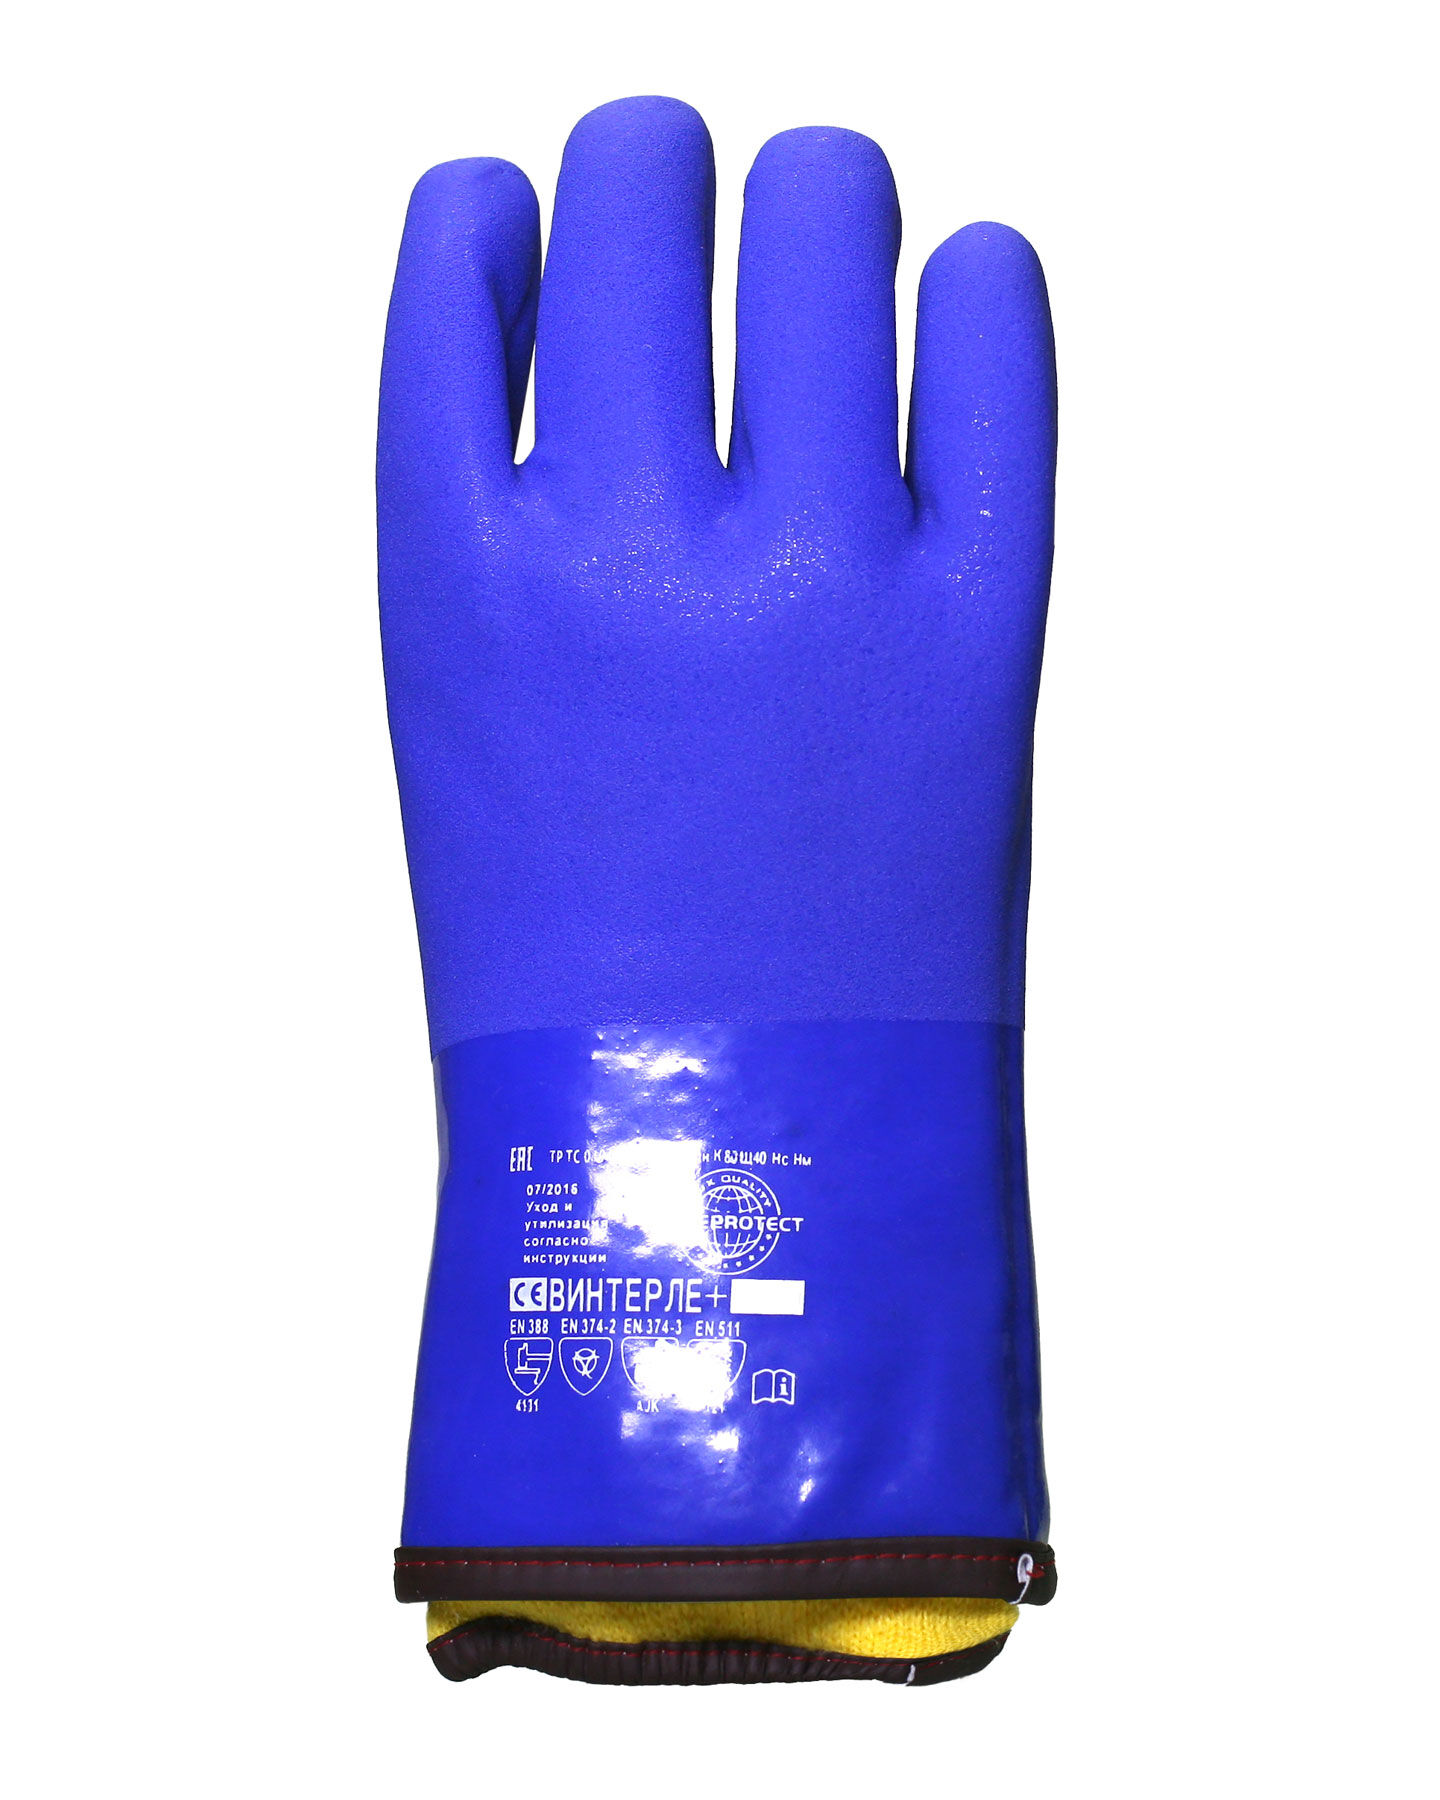 Перчатки утепленные Safeprotect ВИНТЕРЛЕ+ (ПВХ, флис+вынимаемый акриловый вкладыш) 4